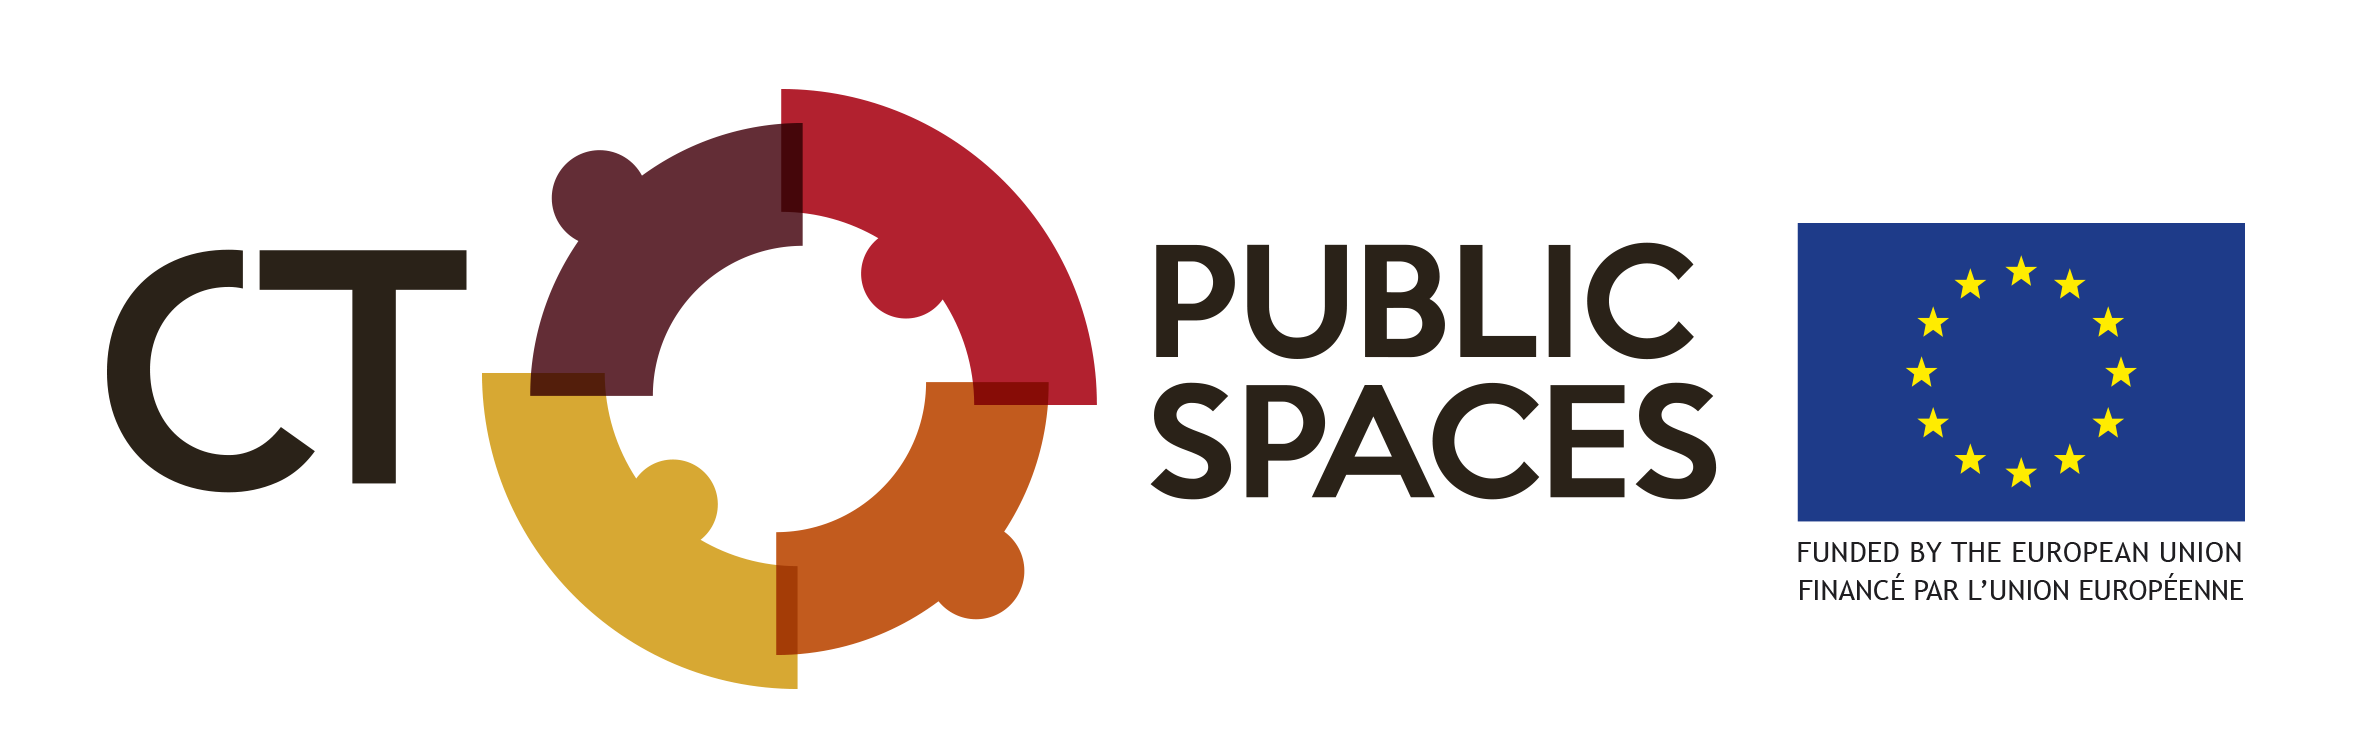 CT Public Spaces